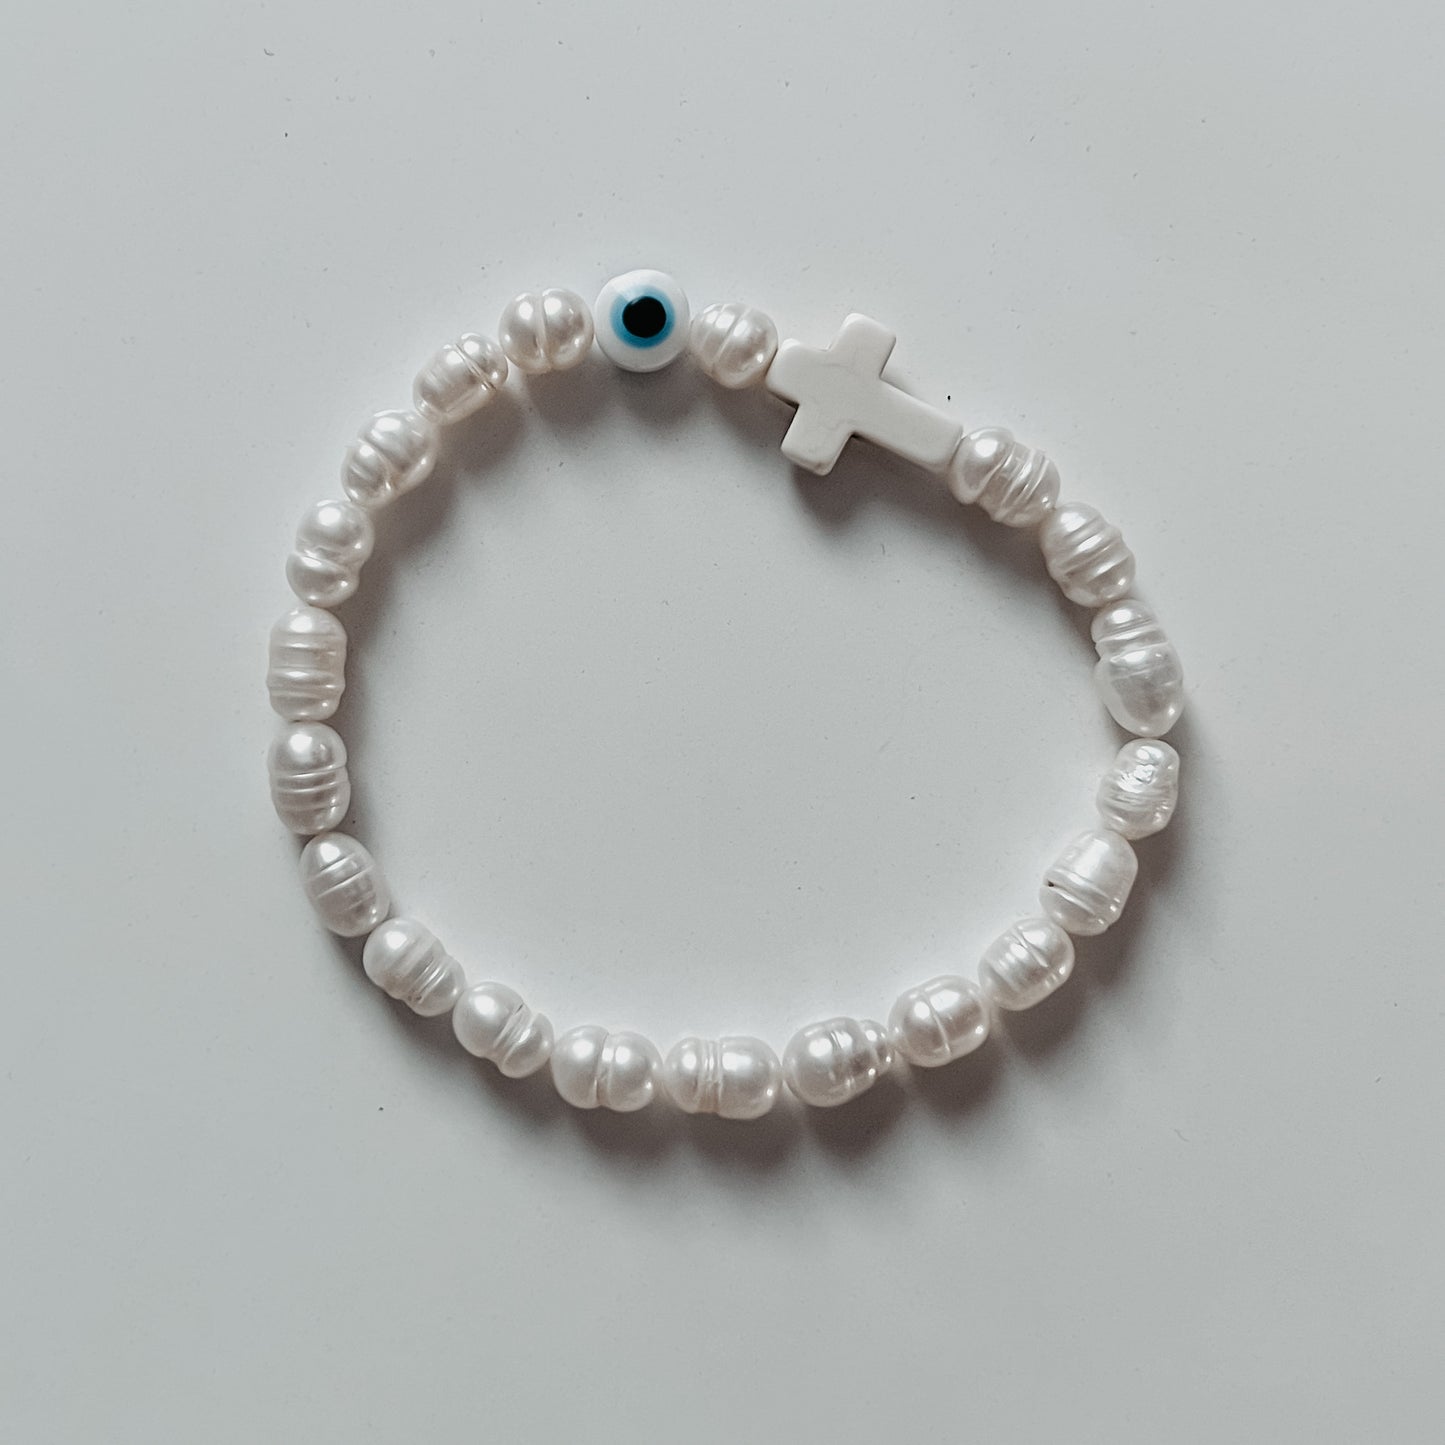 Yianna Protection Bracelet